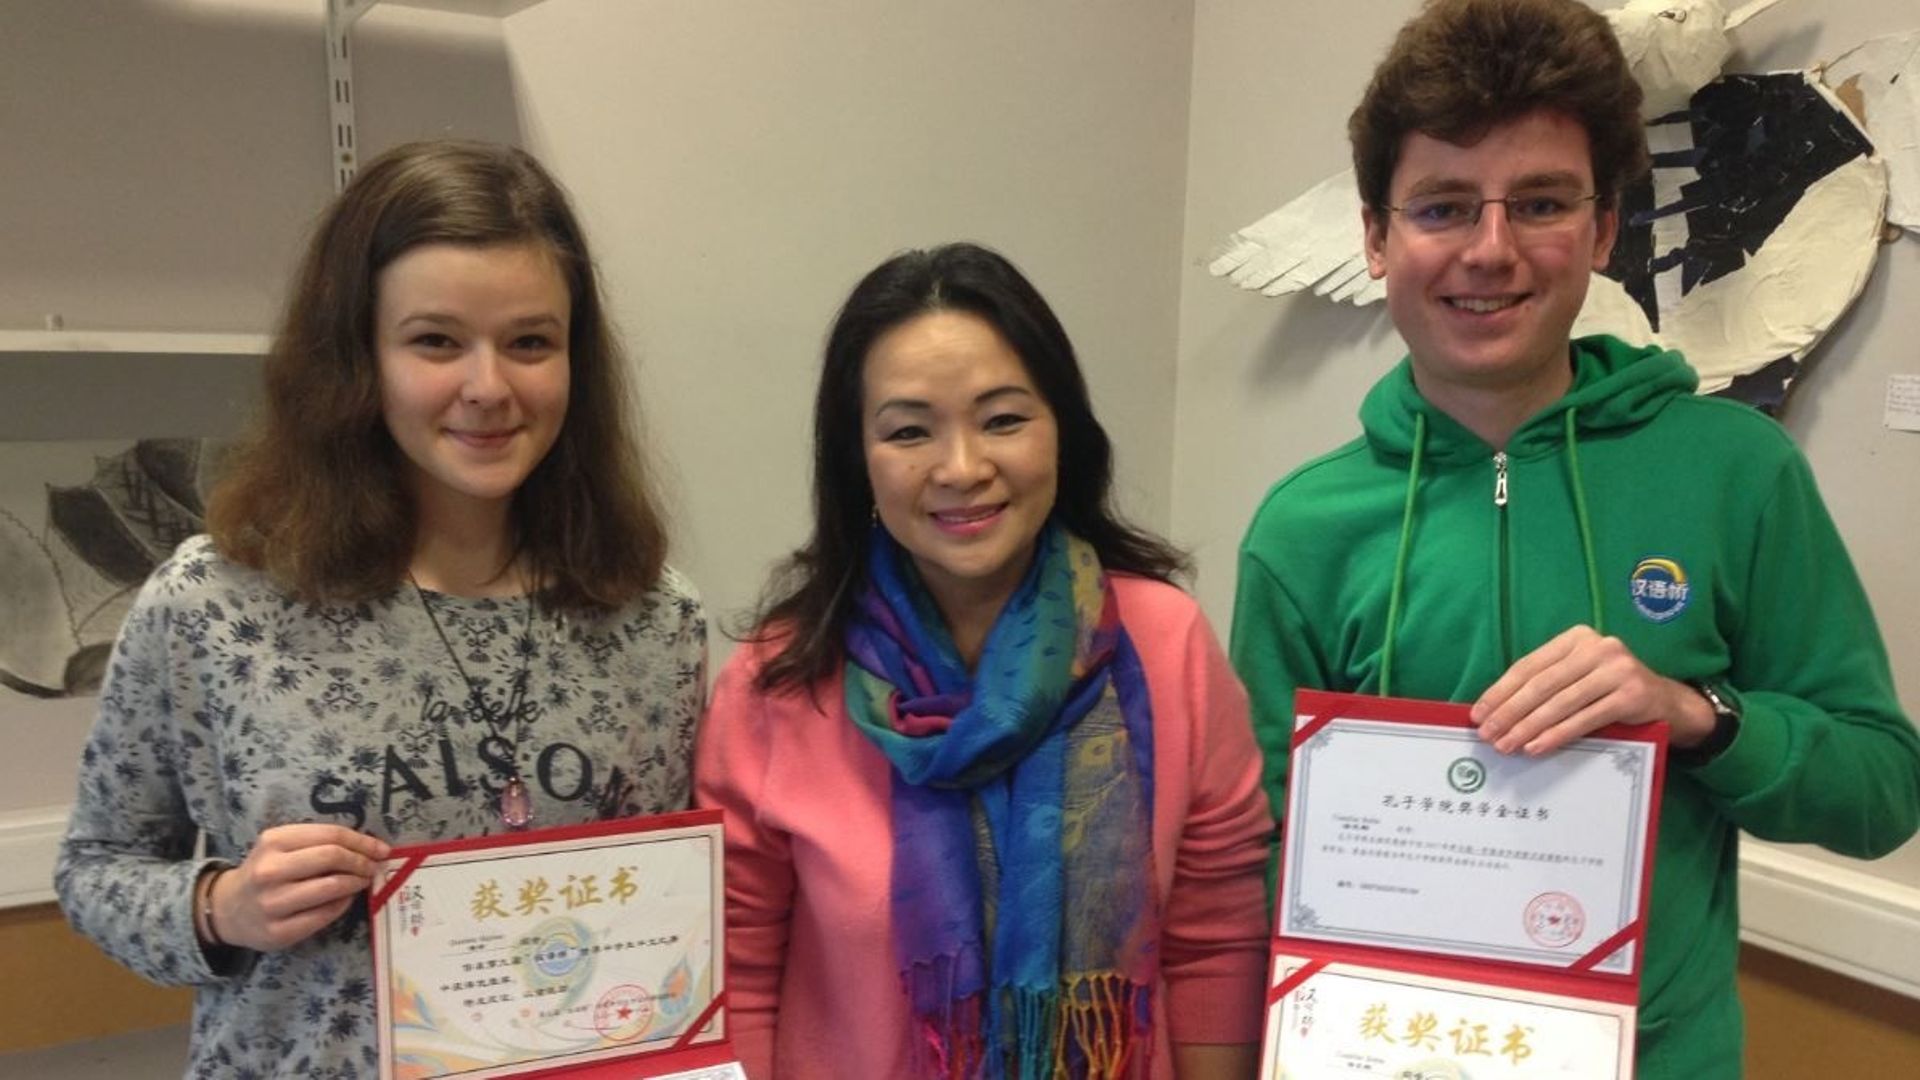 Deux élèves de Champion récompensés lors d'un concours d'éloquence en chinois